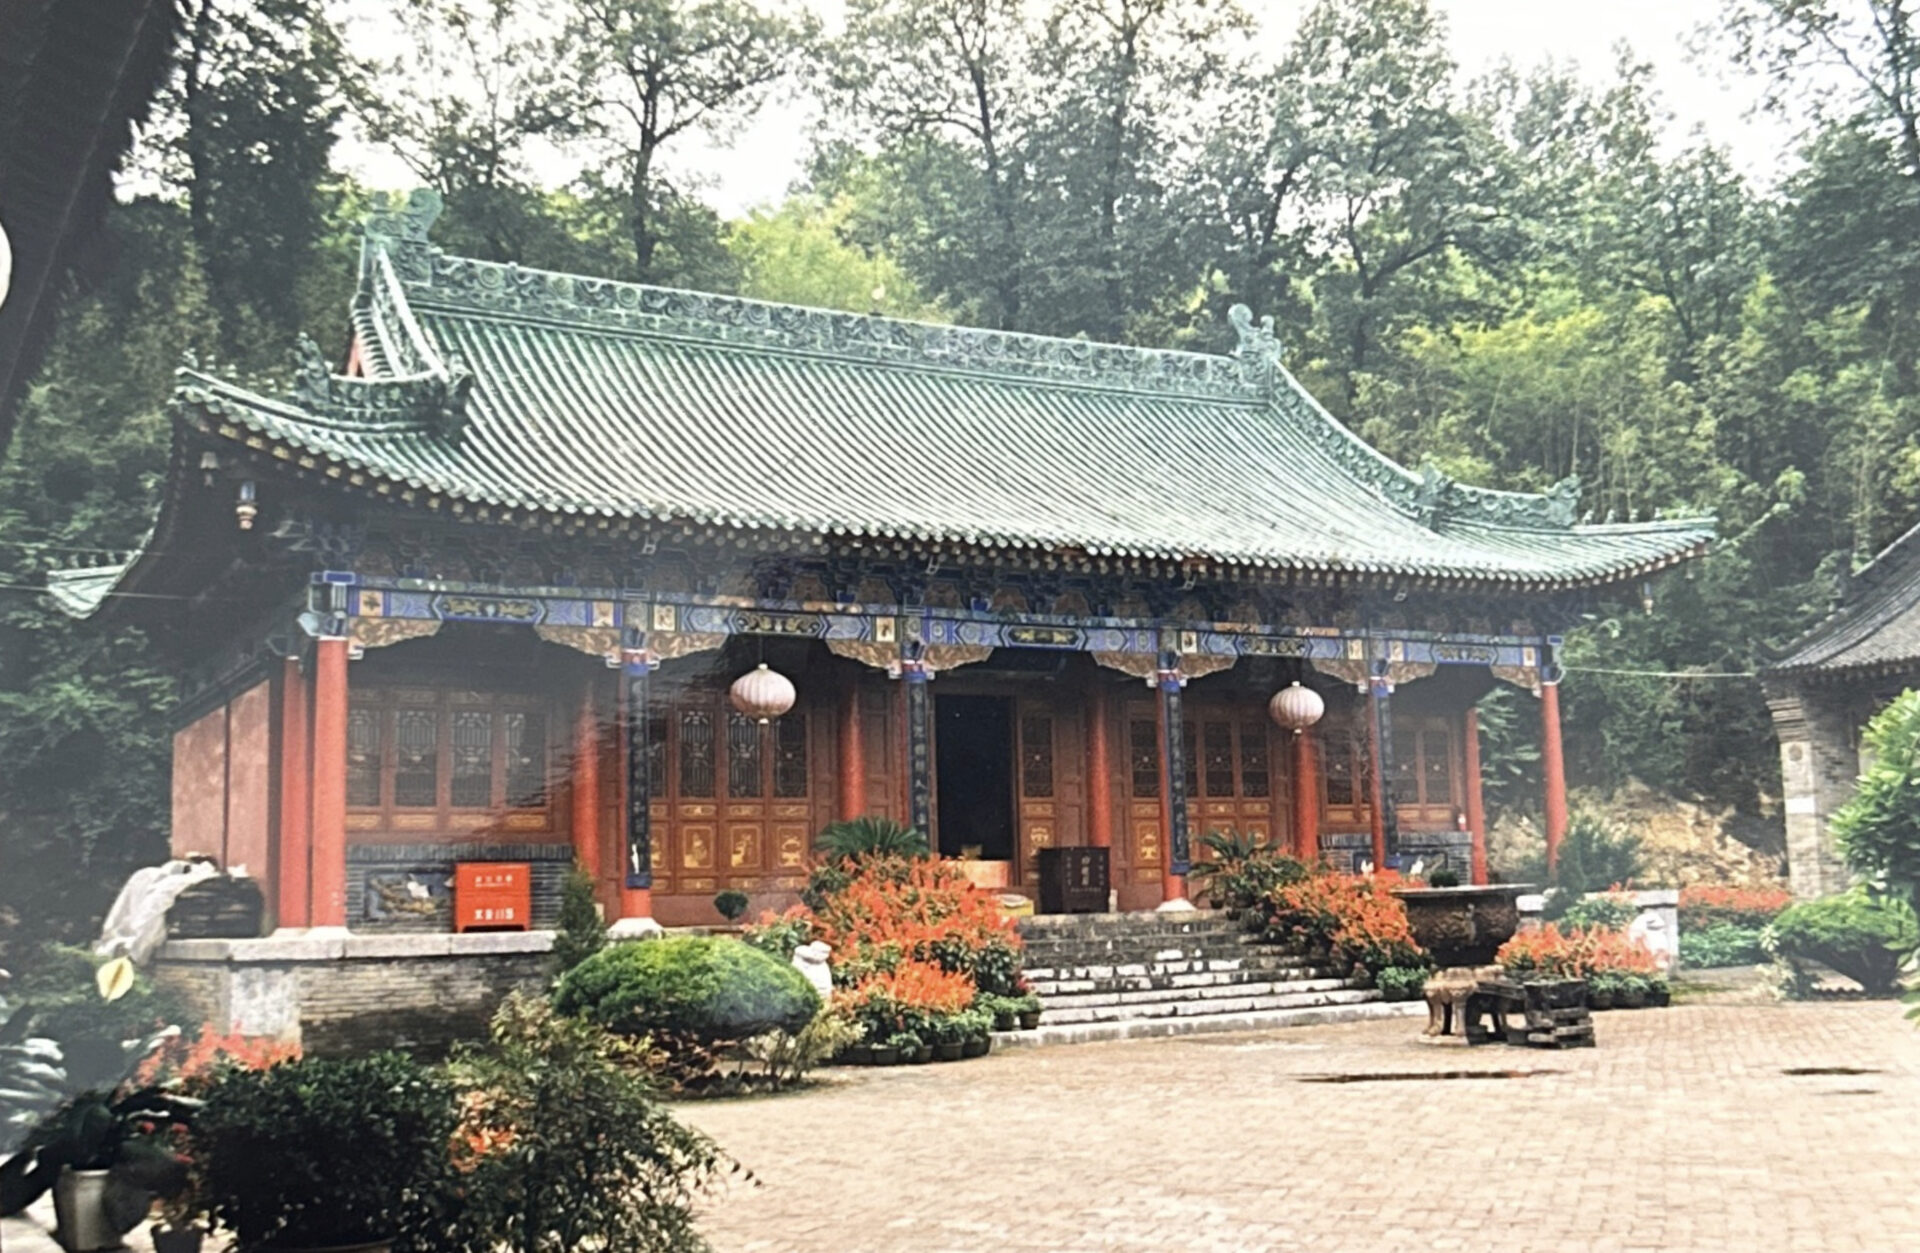 Training in China - Erste Trainingsreise nach China 1998 - Training im Kloster Luoguantai an dem das Daodejing von Laotse verfasst worden sein soll